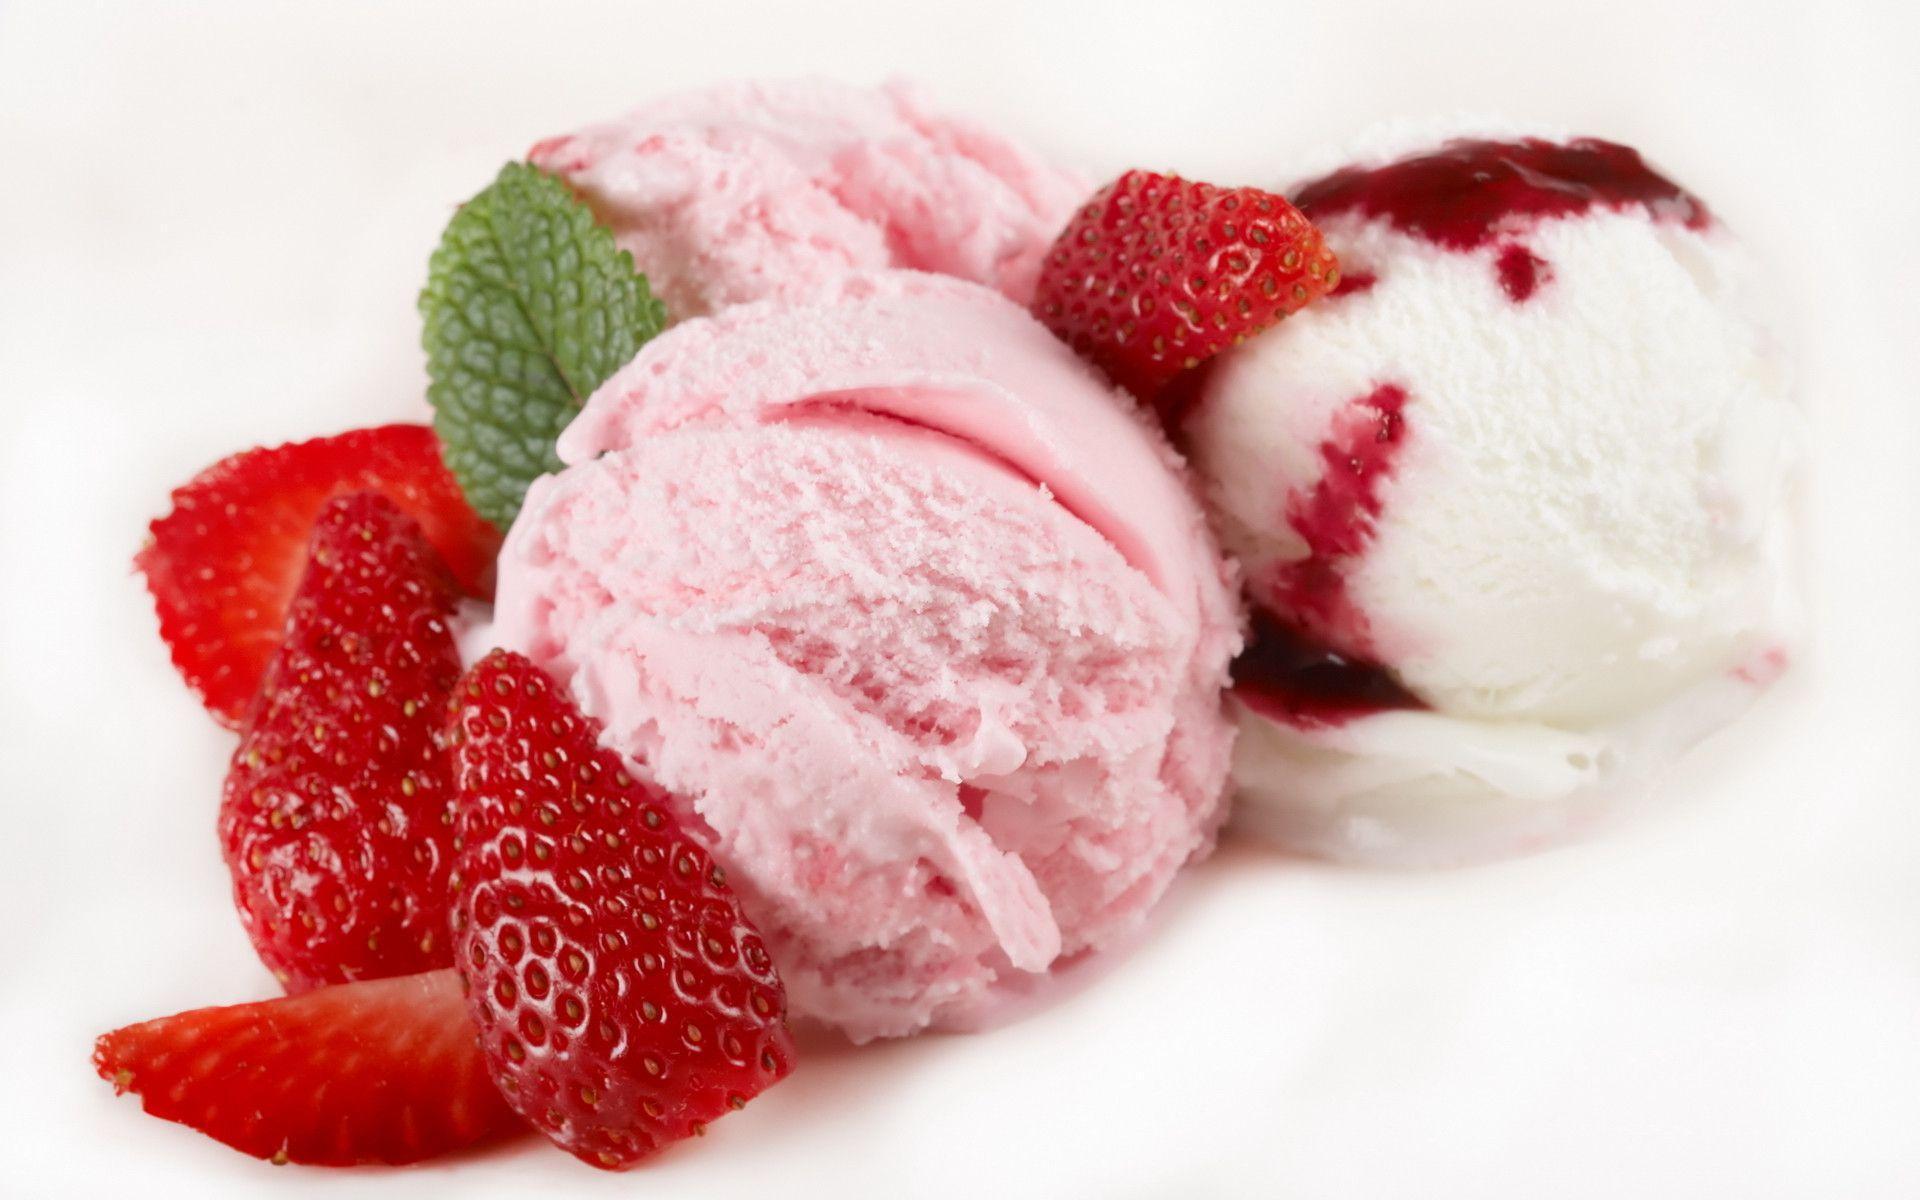 Strawberry Ice Cream HD Wallpaper 1920x1080p wallpaper download